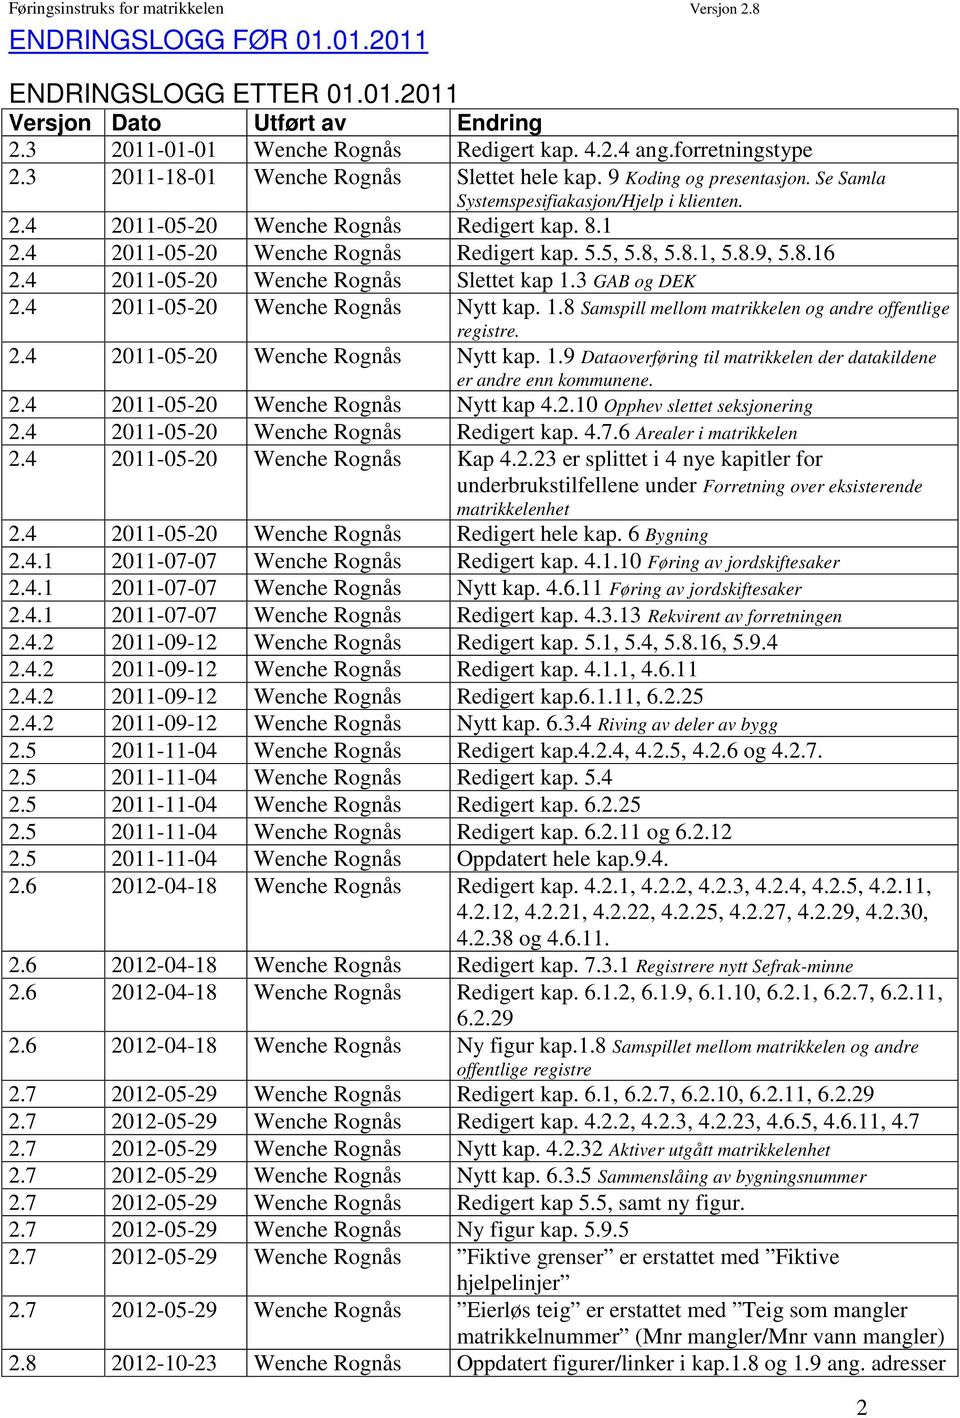 4 2011-05-20 Wenche Rognås Redigert kap. 5.5, 5.8, 5.8.1, 5.8.9, 5.8.16 2.4 2011-05-20 Wenche Rognås Slettet kap 1.3 GAB og DEK 2.4 2011-05-20 Wenche Rognås Nytt kap. 1.8 Samspill mellom matrikkelen og andre offentlige registre.